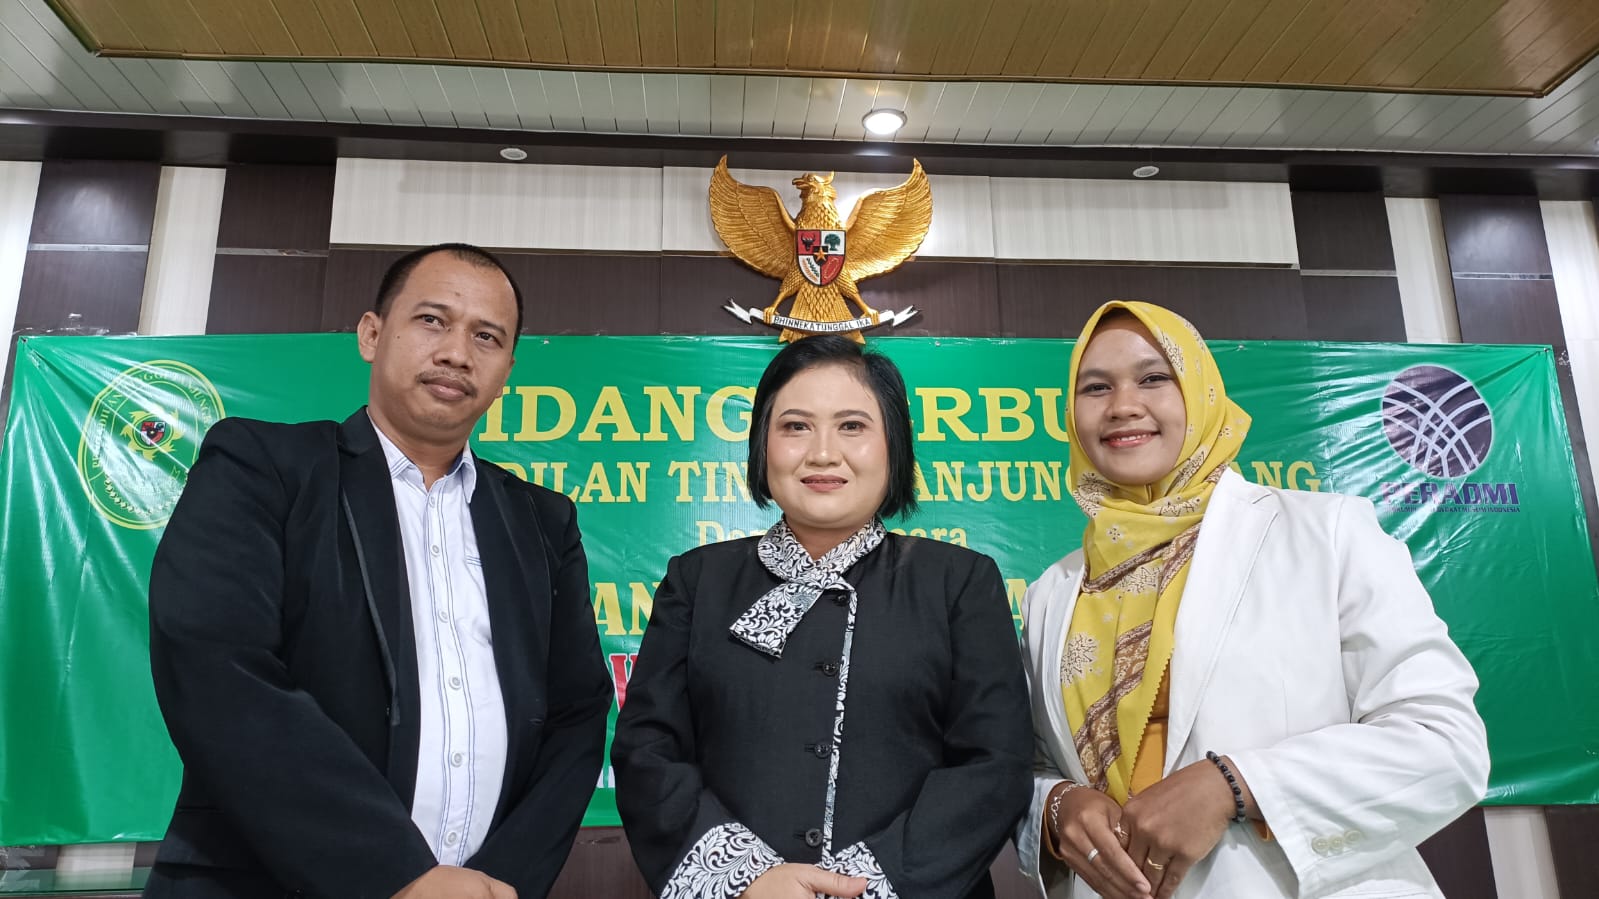 Ketua Perkumpulan Advokat Muslim Indonesia Lampung Resmi Dilantik